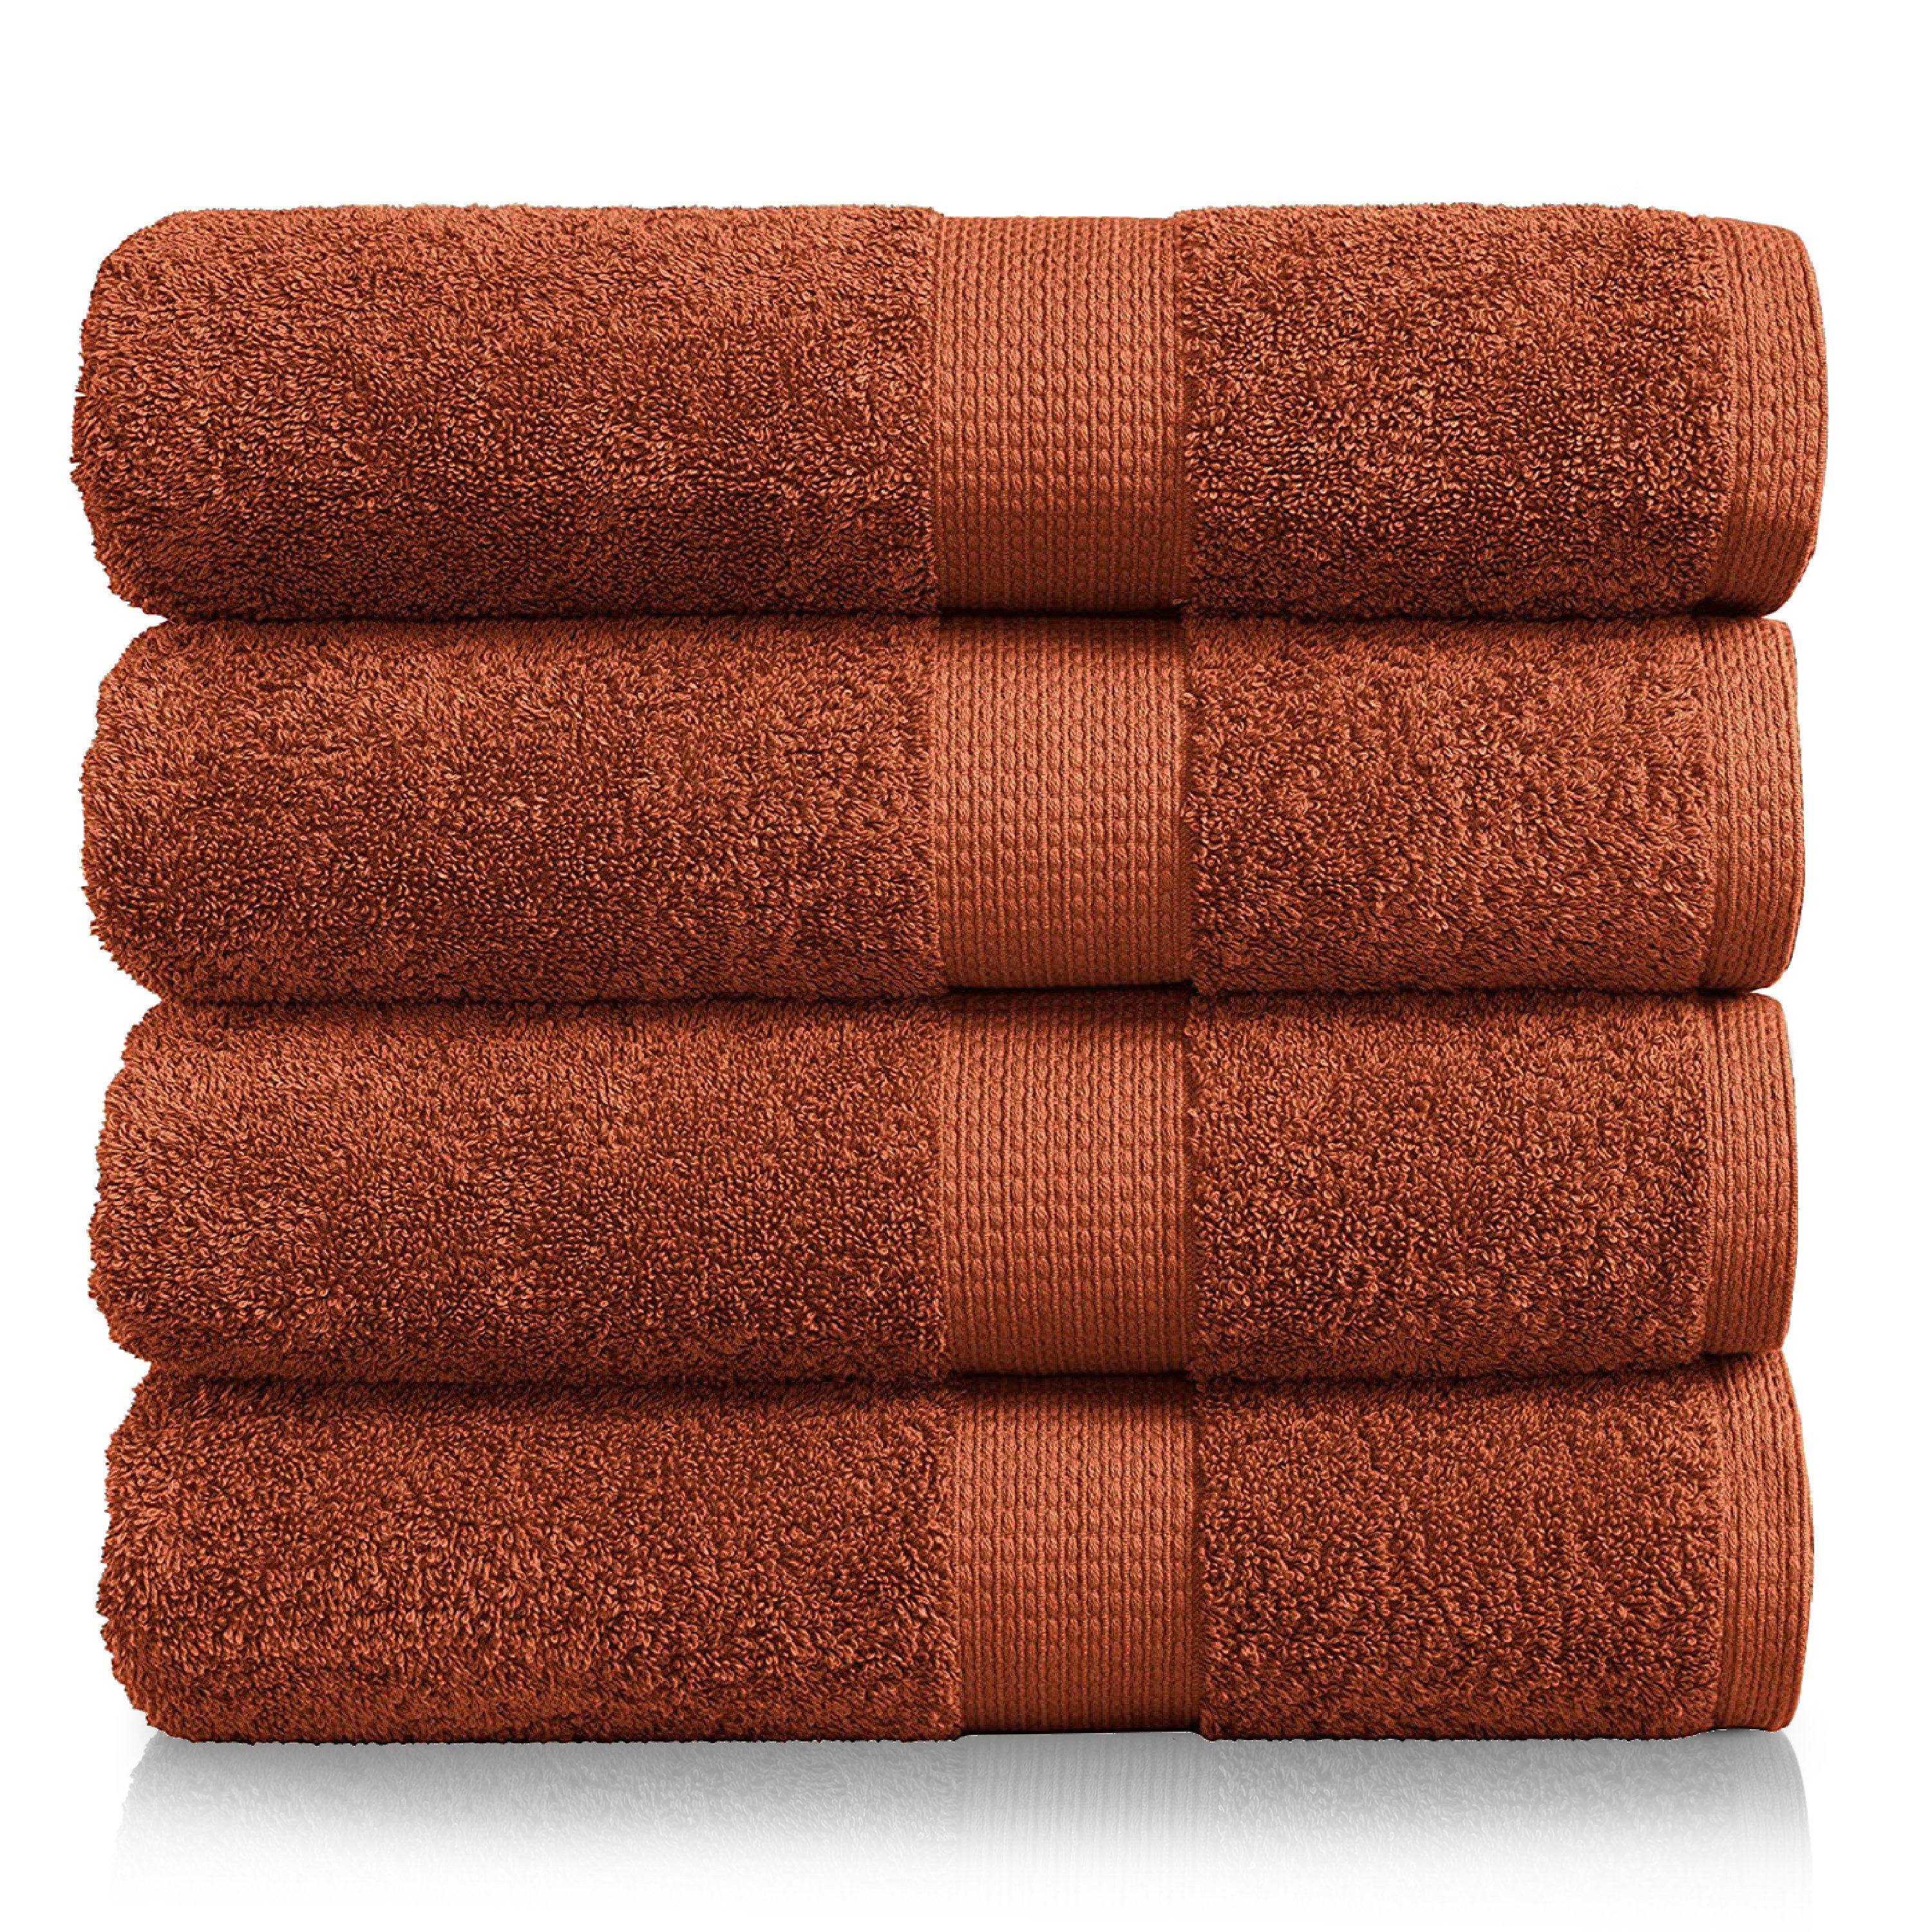 Shop Loft 100% Cotton Solid 6 Piece Antimicrobial Towel Set Navy, Bath  Towels